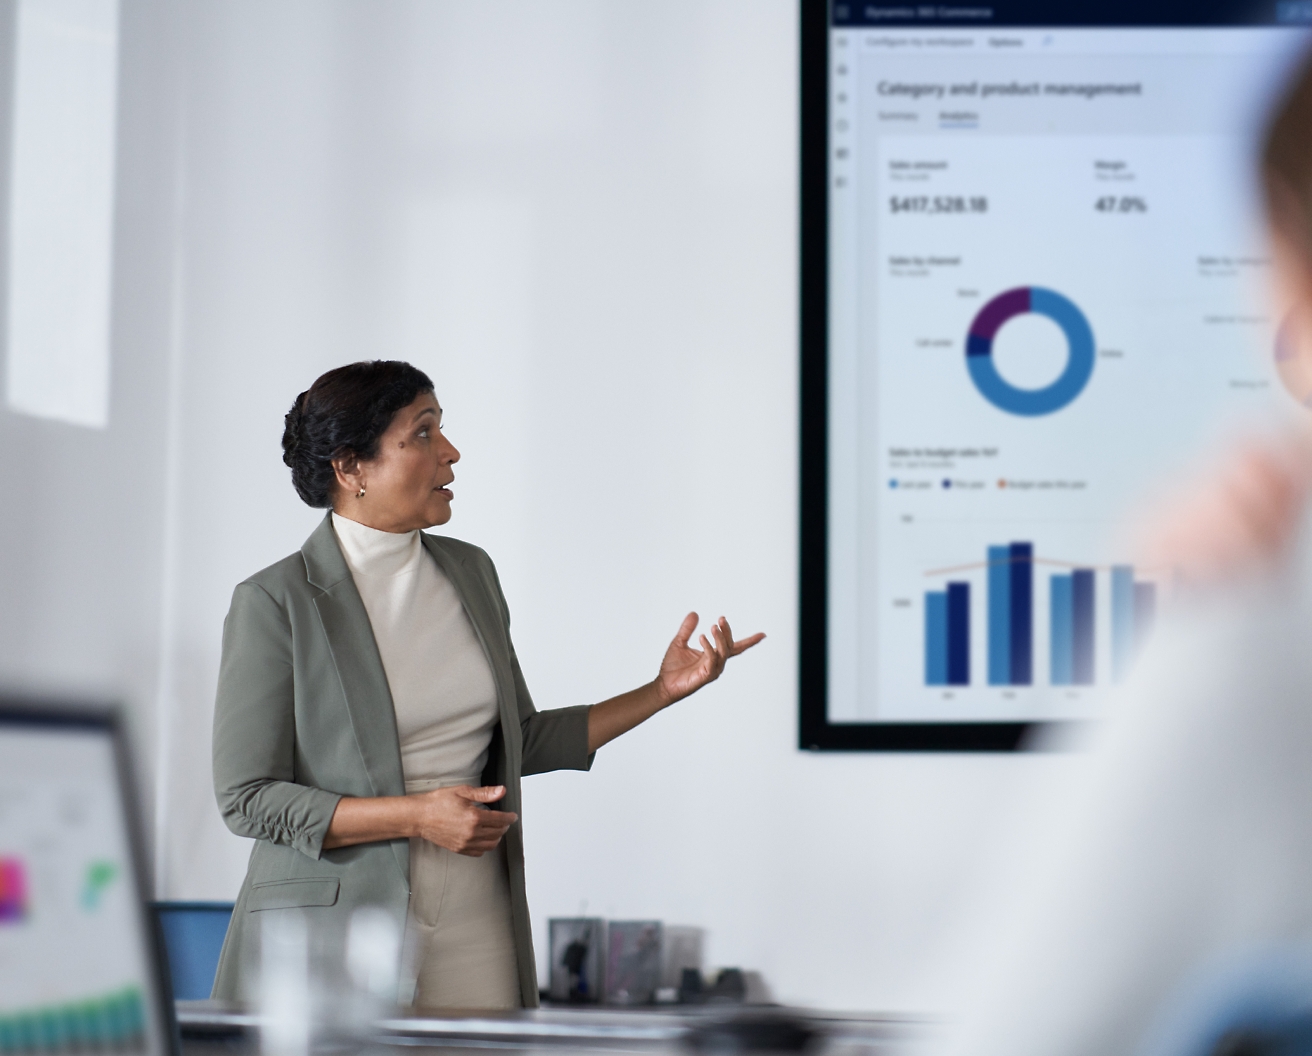 Uma mulher profissional apresenta dados financeiros em uma tela para sua audiência em um ambiente de escritório moderno.